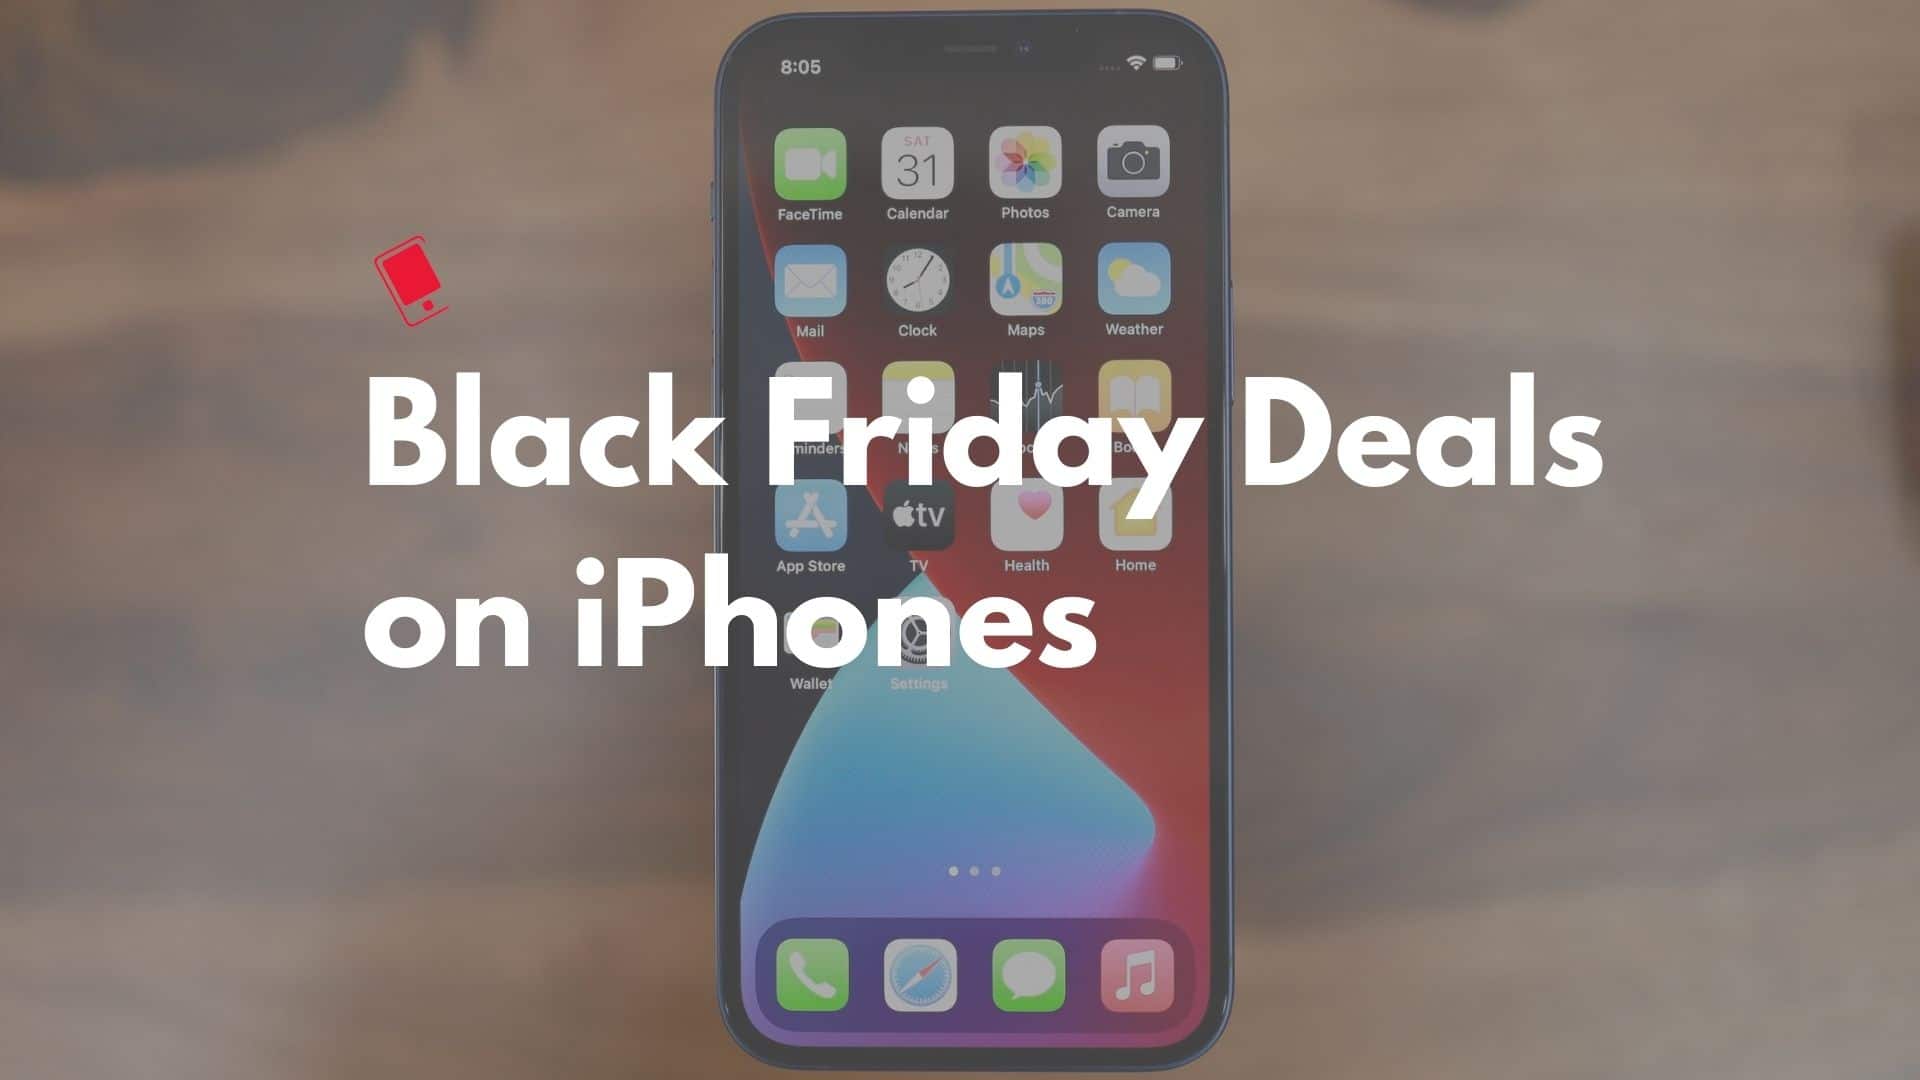 iPhone 12 Black Friday Deals